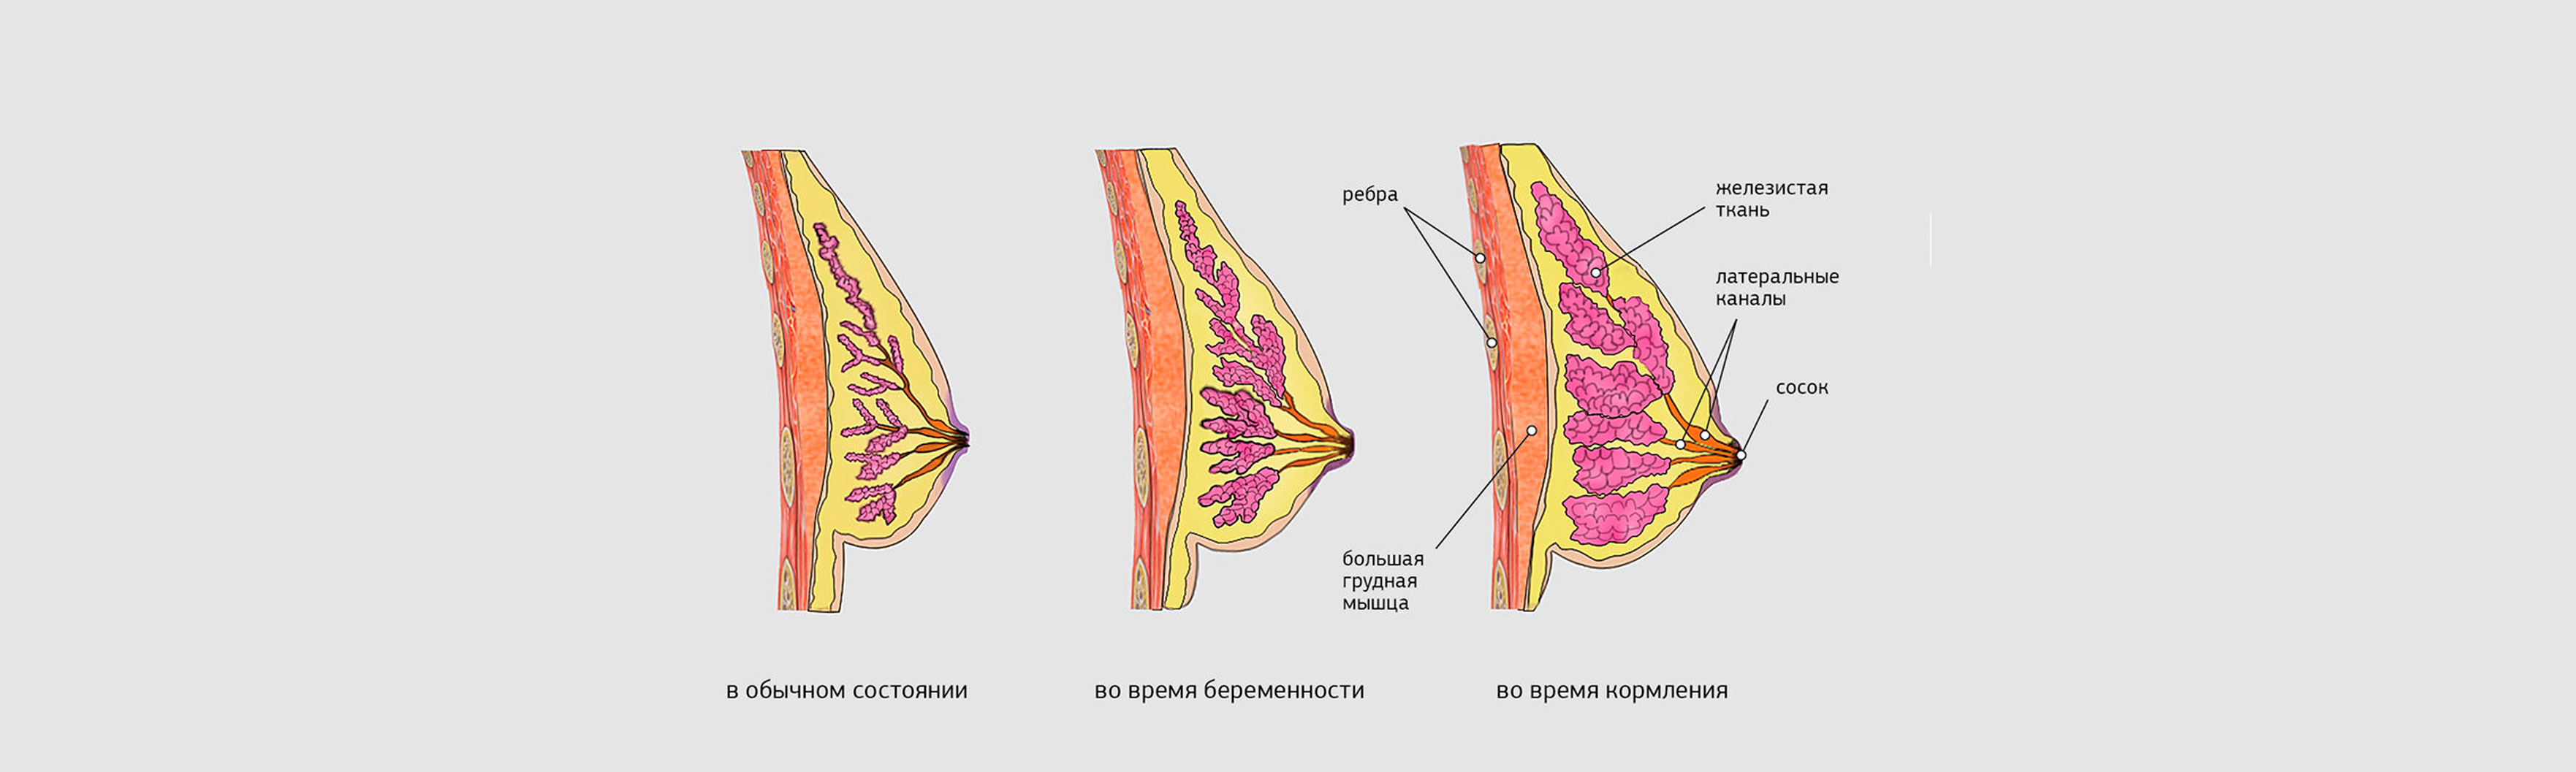 Птоз груди: какие бывают стадии, коррекция проблемы